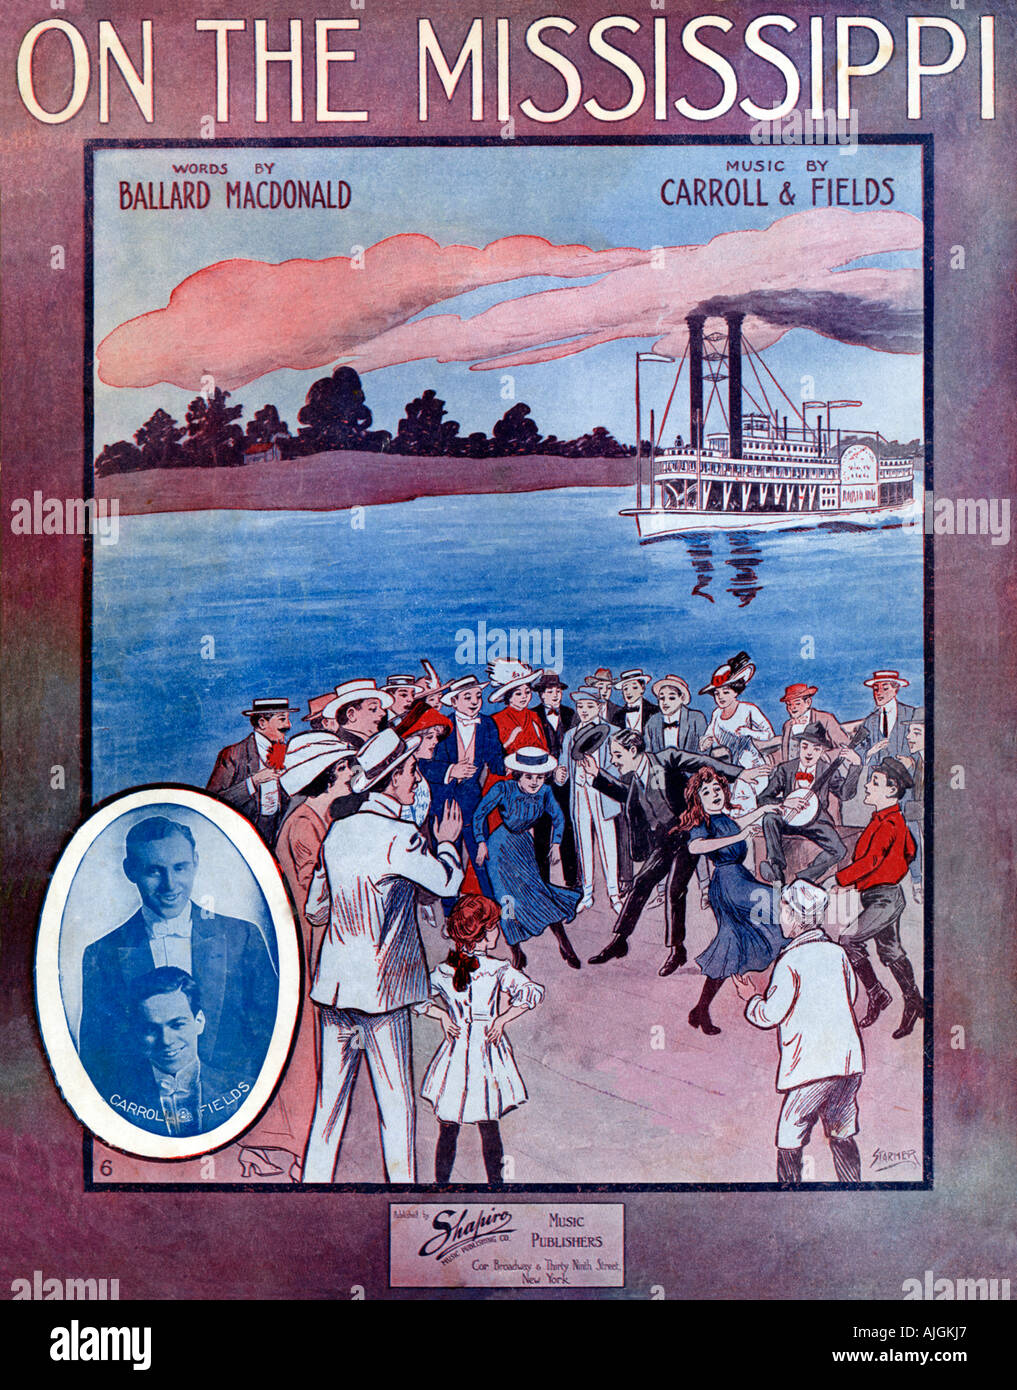 Sur le Mississipi, 1912 feuille de musique illustré la couverture d'un Carrol et champs chanson, danse sur les rives de Old Man River Banque D'Images